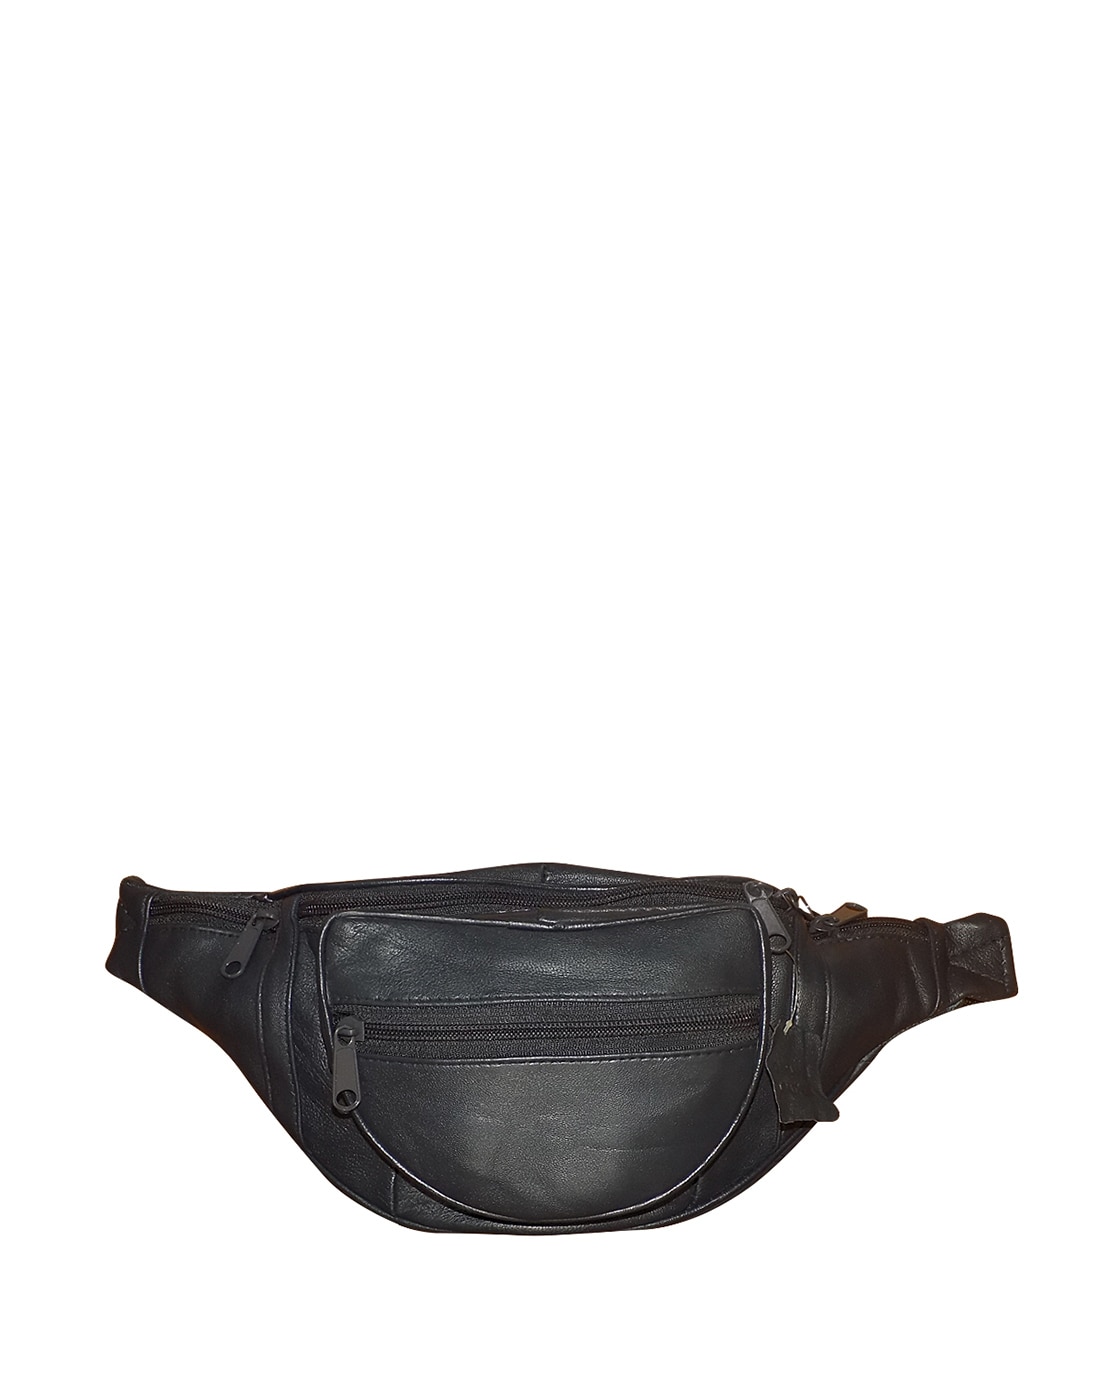 Buy Belt Bag Canvas Online | Crossbody Bag – Nappa Dori